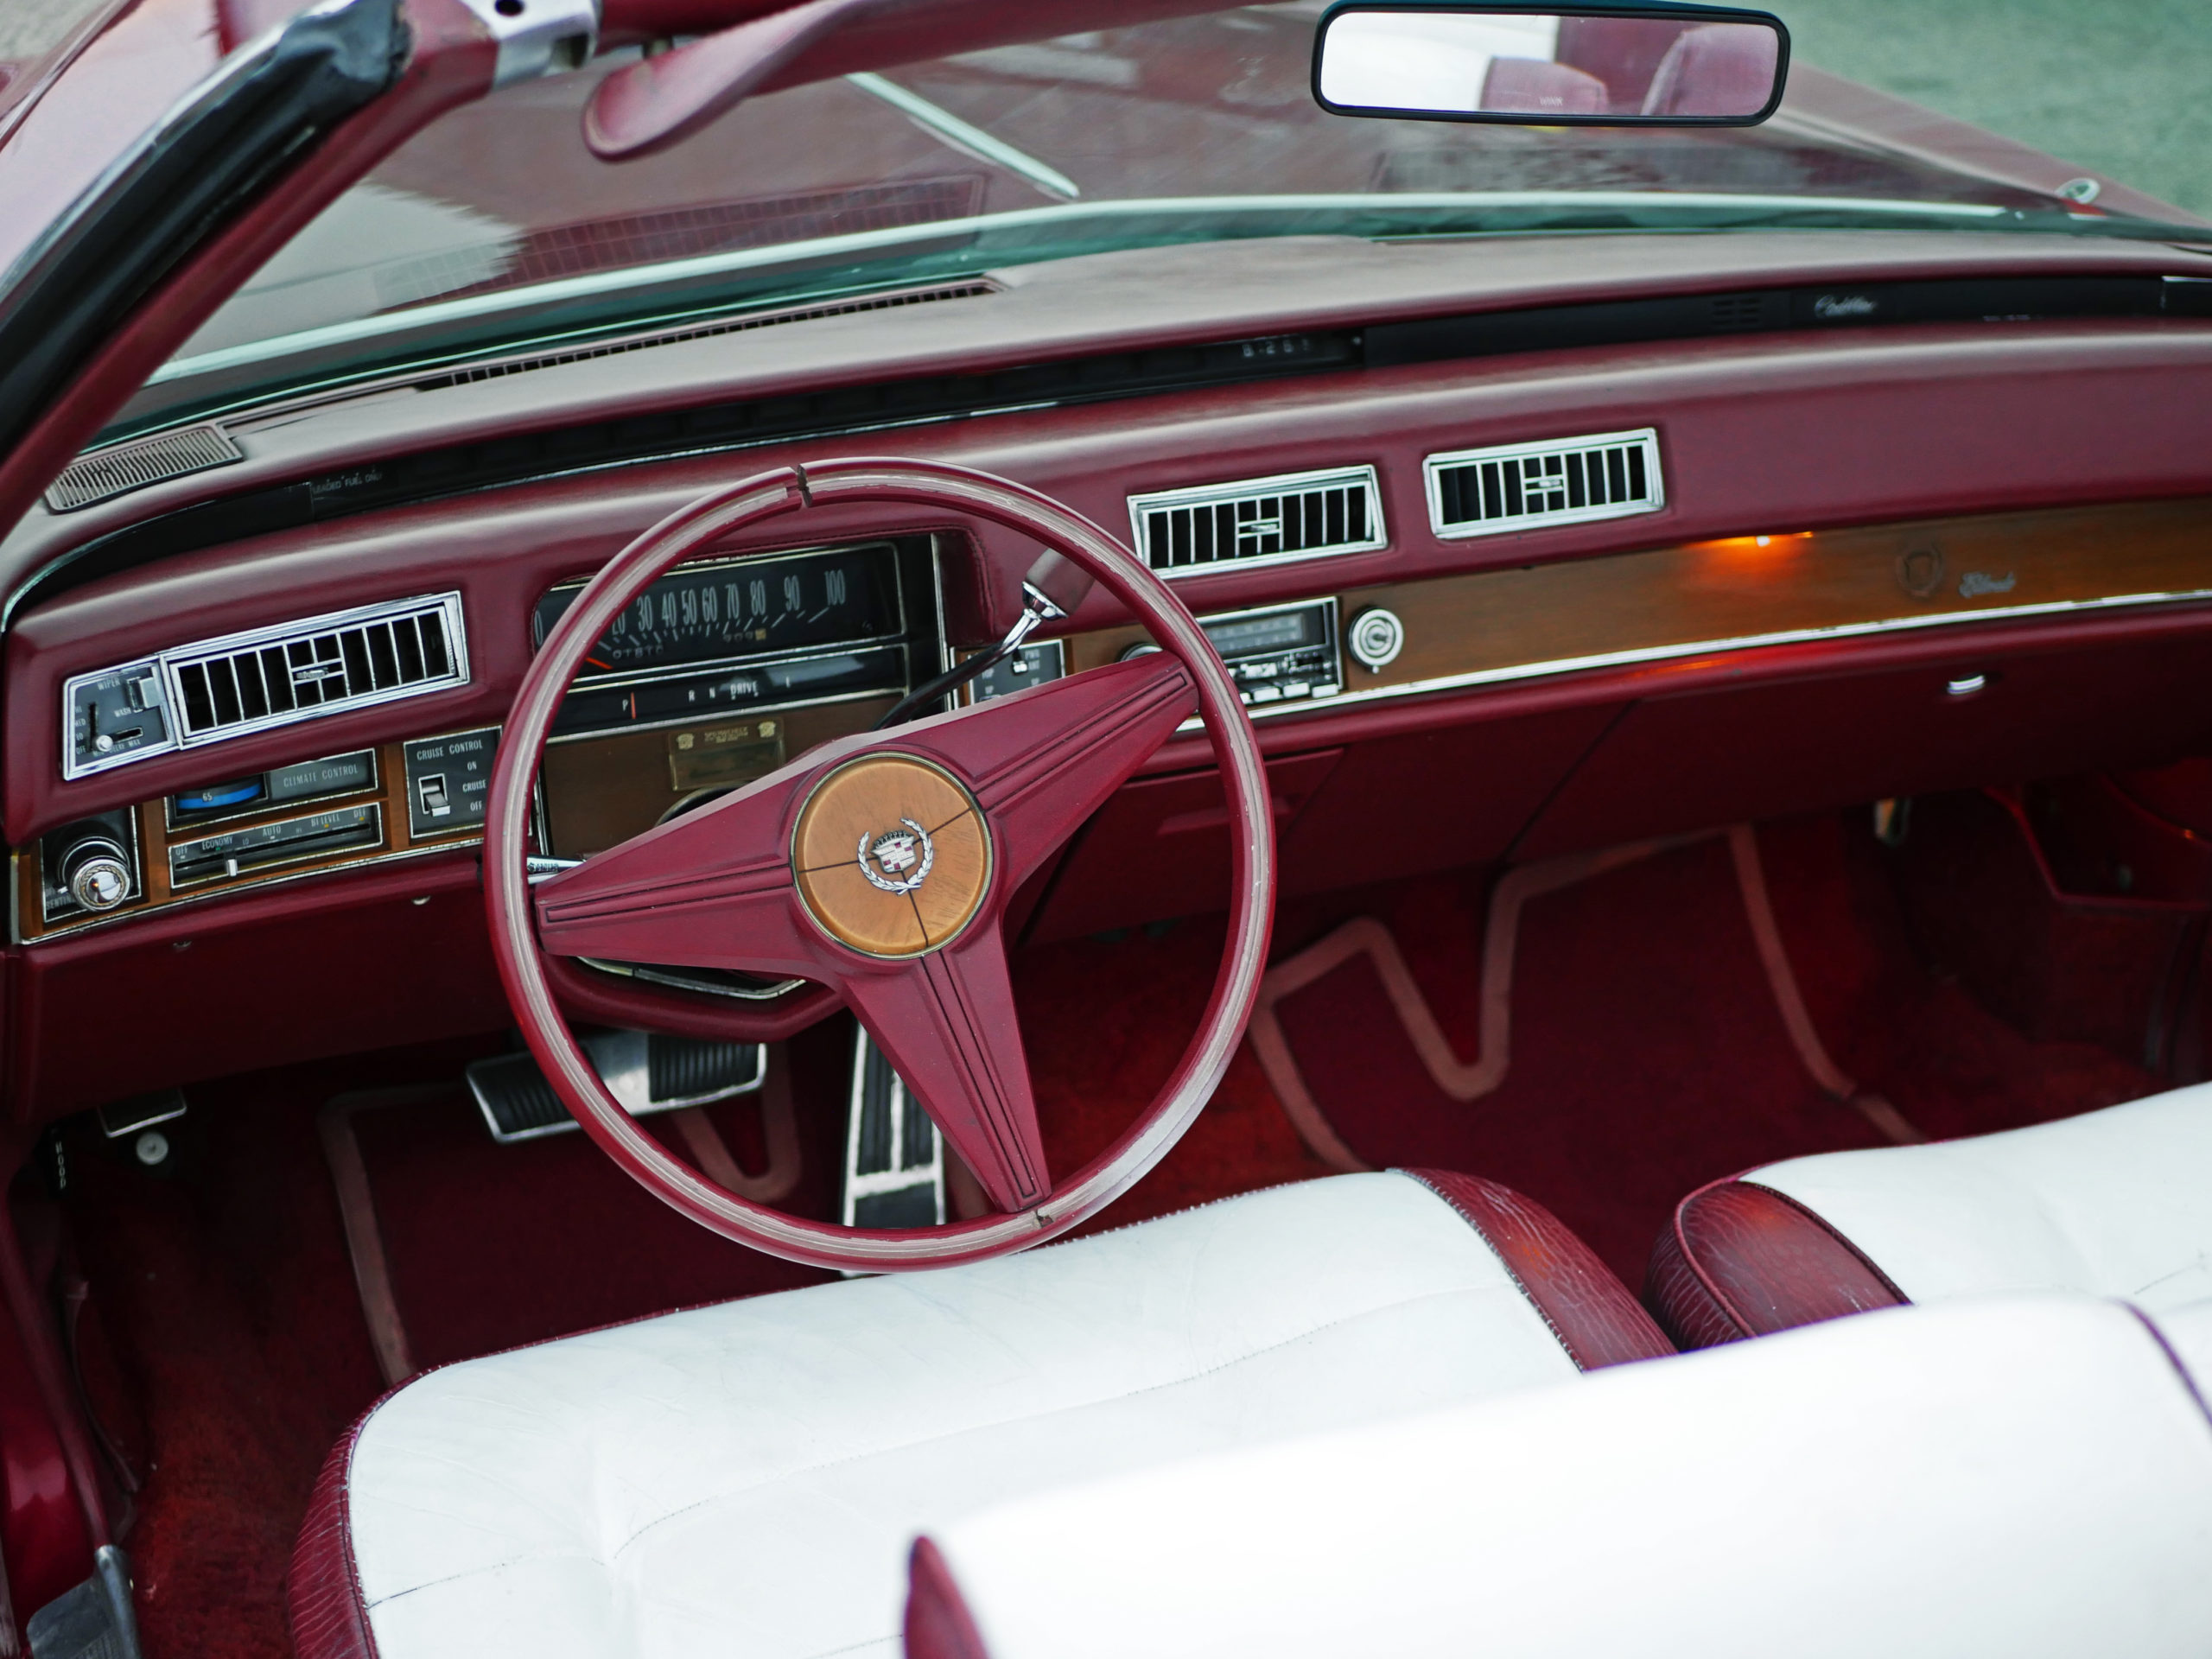 1975-cadillac-el-dorado-dash-interior-monterey-ca-monterey-touring-vehicles